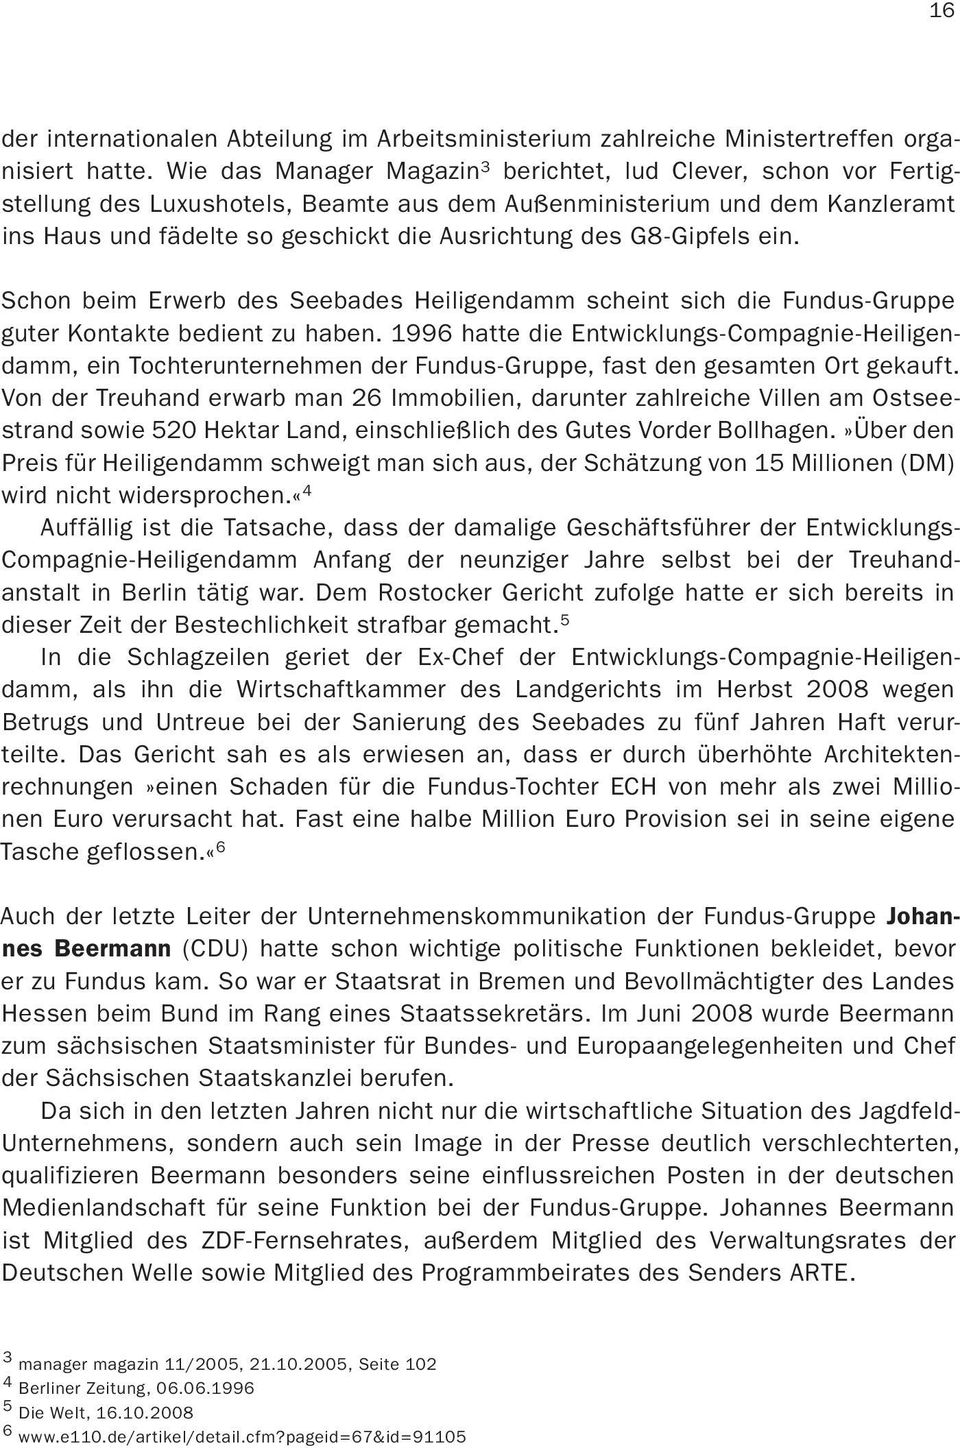 G8-Gipfels ein. Schon beim Erwerb des Seebades Heiligendamm scheint sich die Fundus-Gruppe guter Kontakte bedient zu haben.